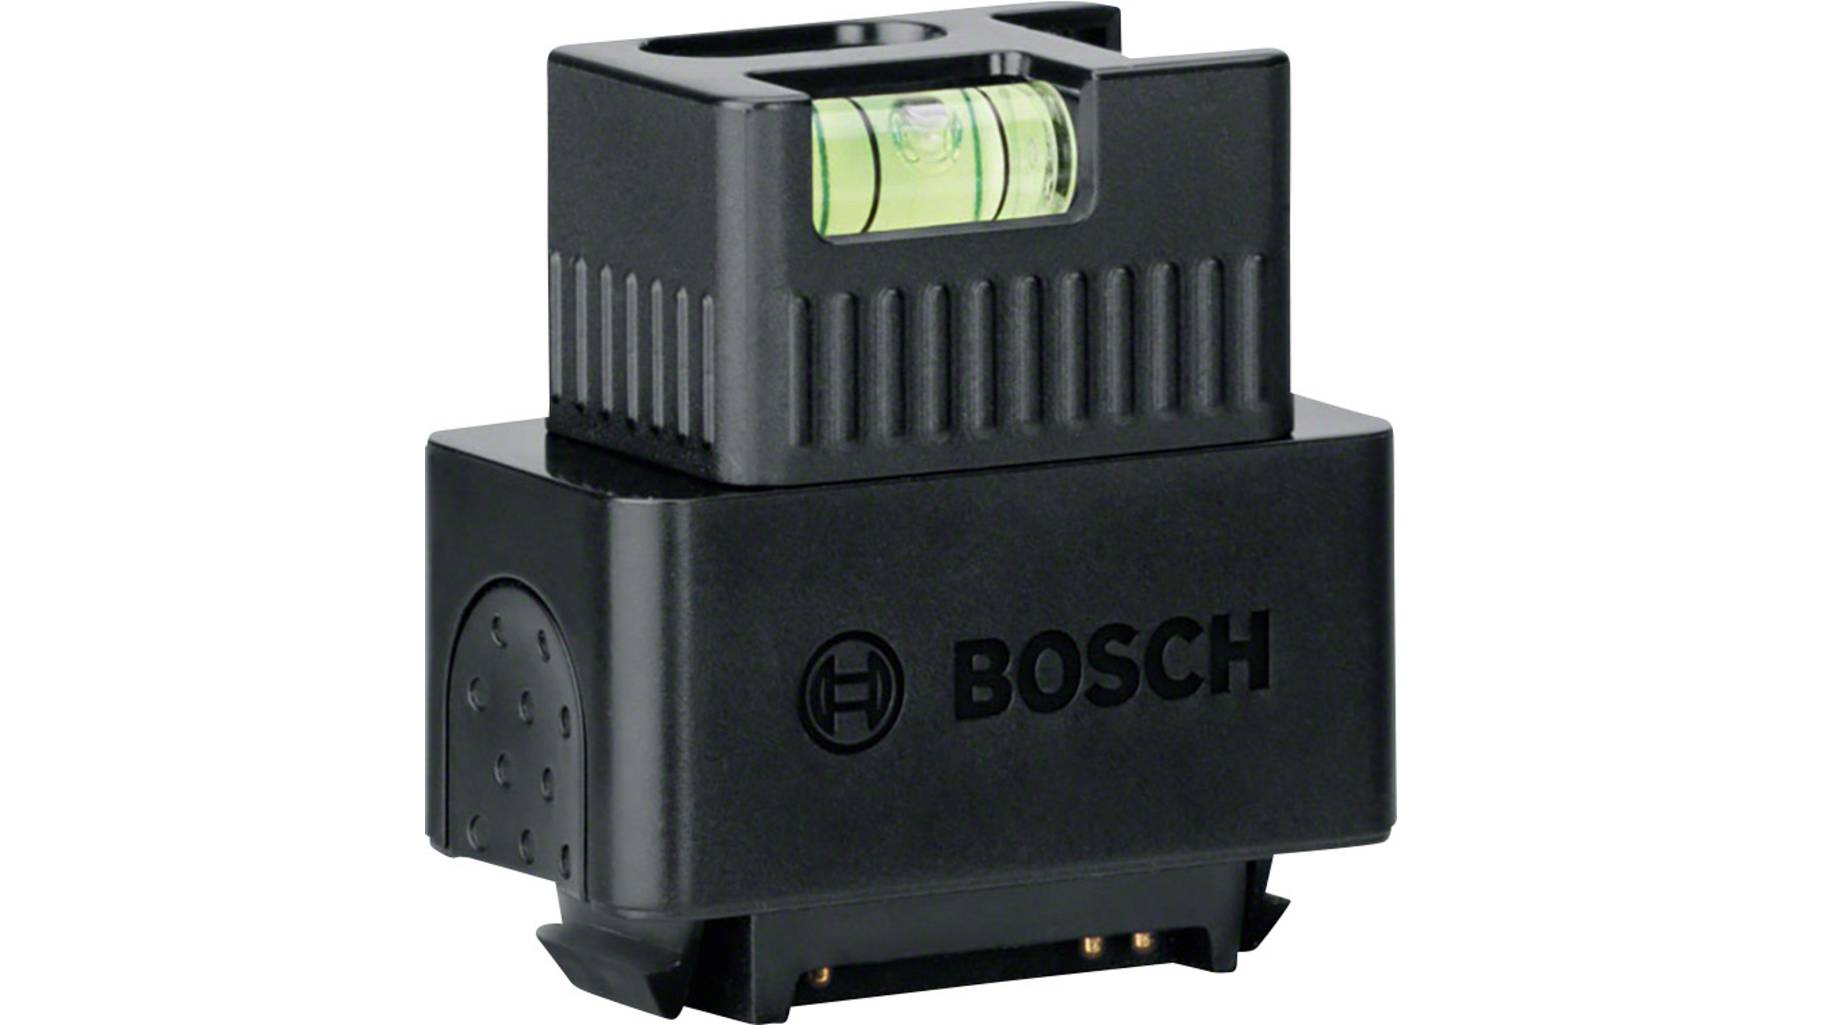 Bosch AC3 Zamo III Laser/Bubble